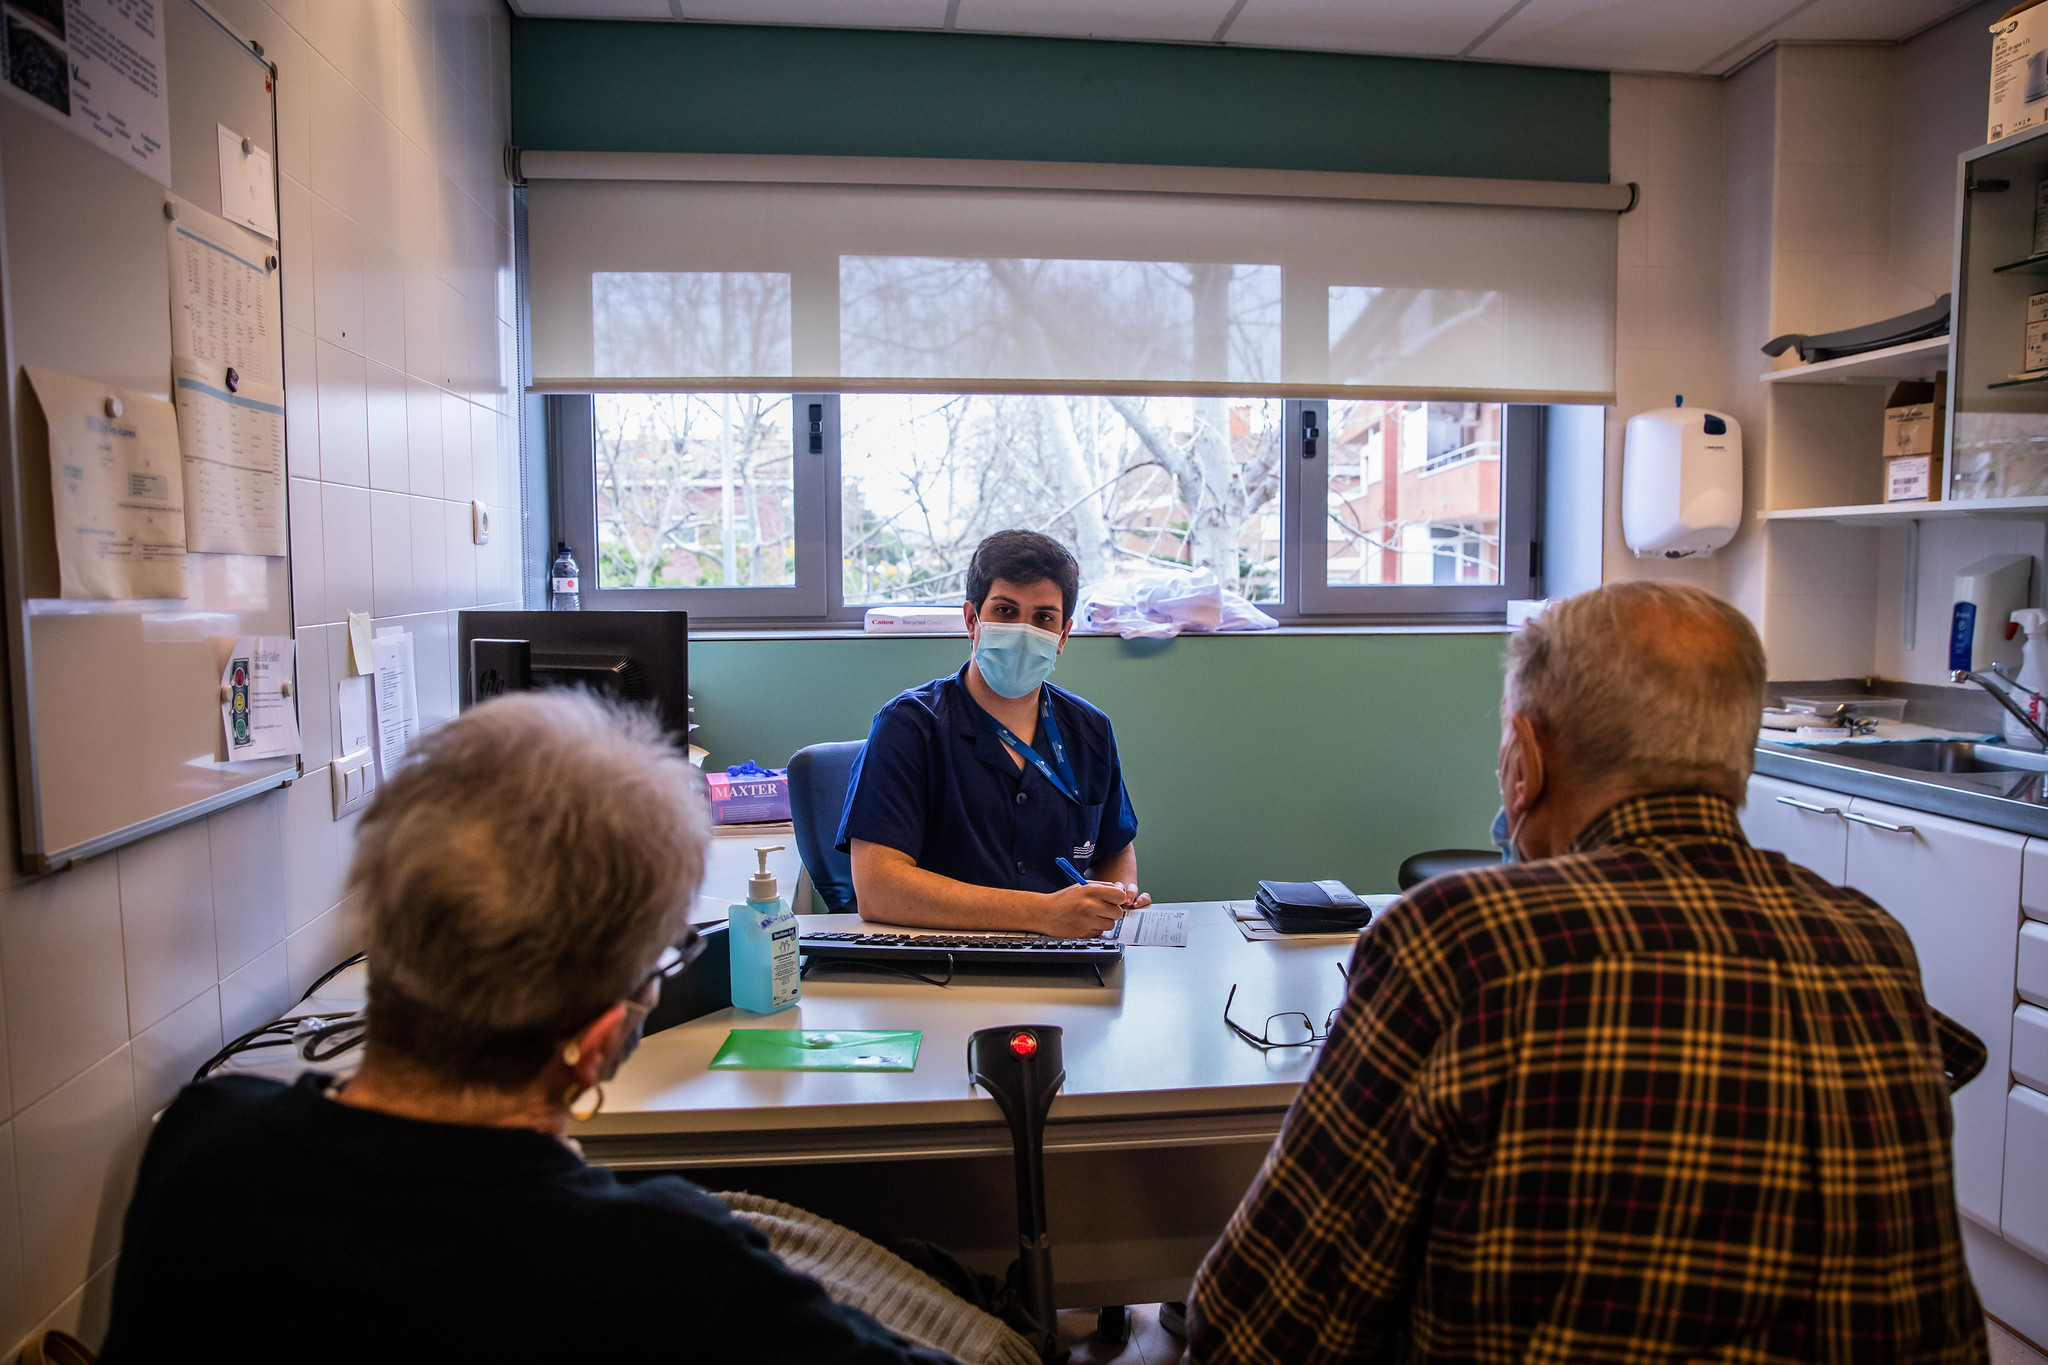 Menys de la meitat de metges parlen en català amb els pacients, però la majoria el vol aprendre